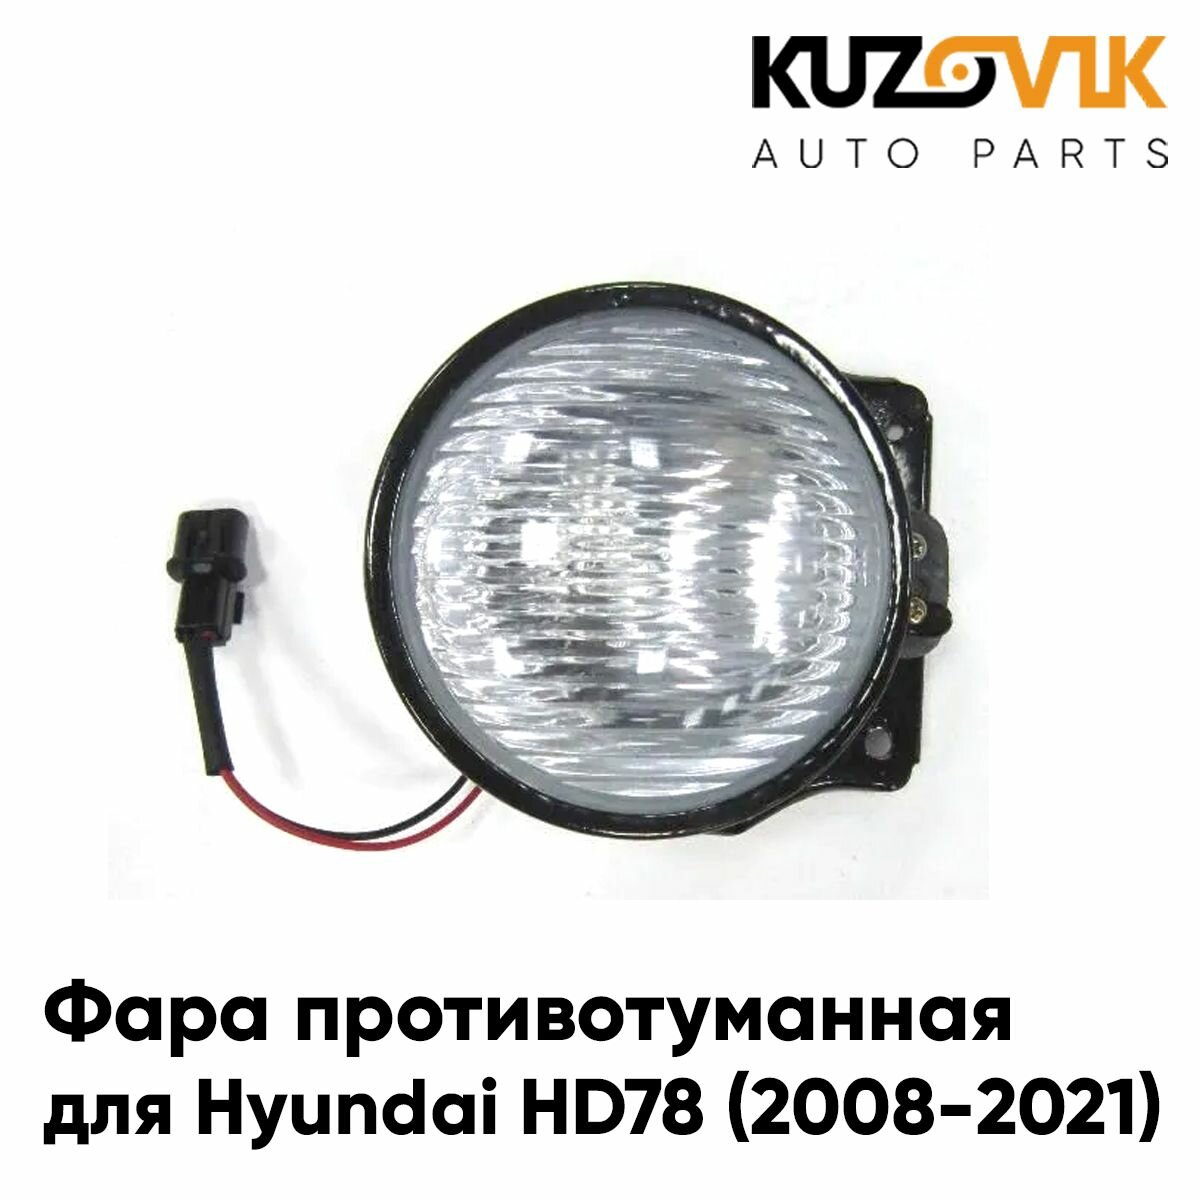 Фара противотуманная для Хендай Hyundai HD78 (2008-2021) левая / правая 1 штука, туманка, птф